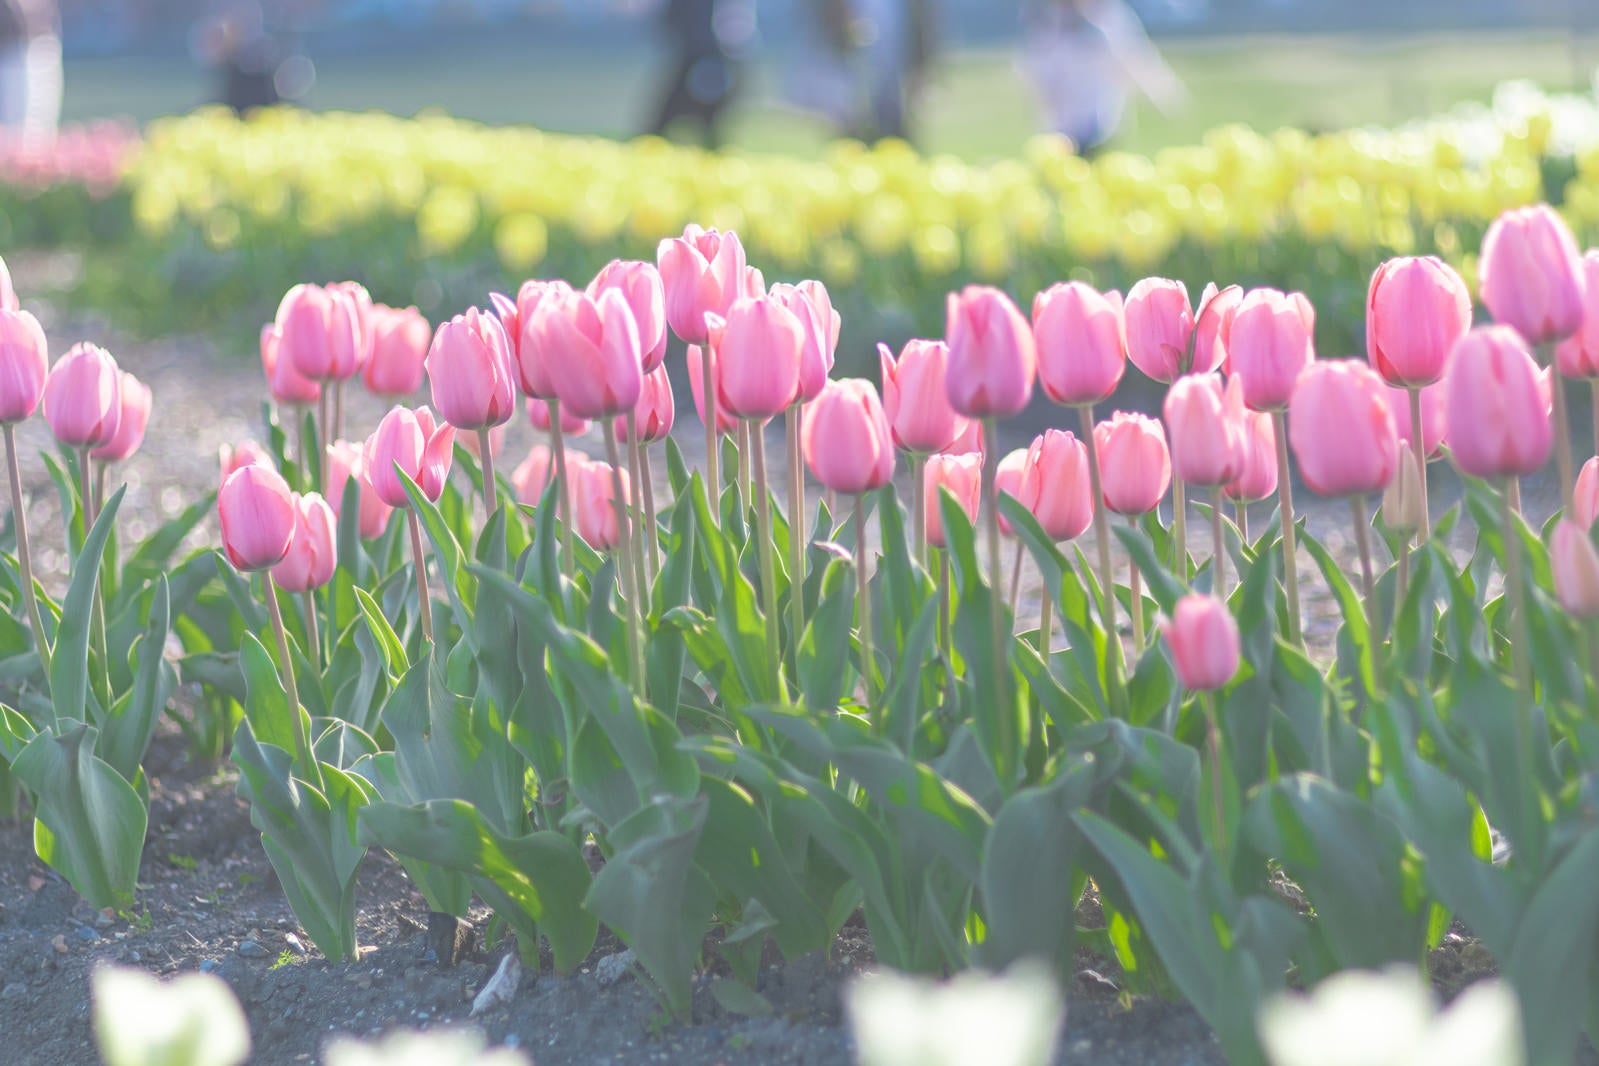 「ピンク色に咲く横並びのチューリップ」の写真